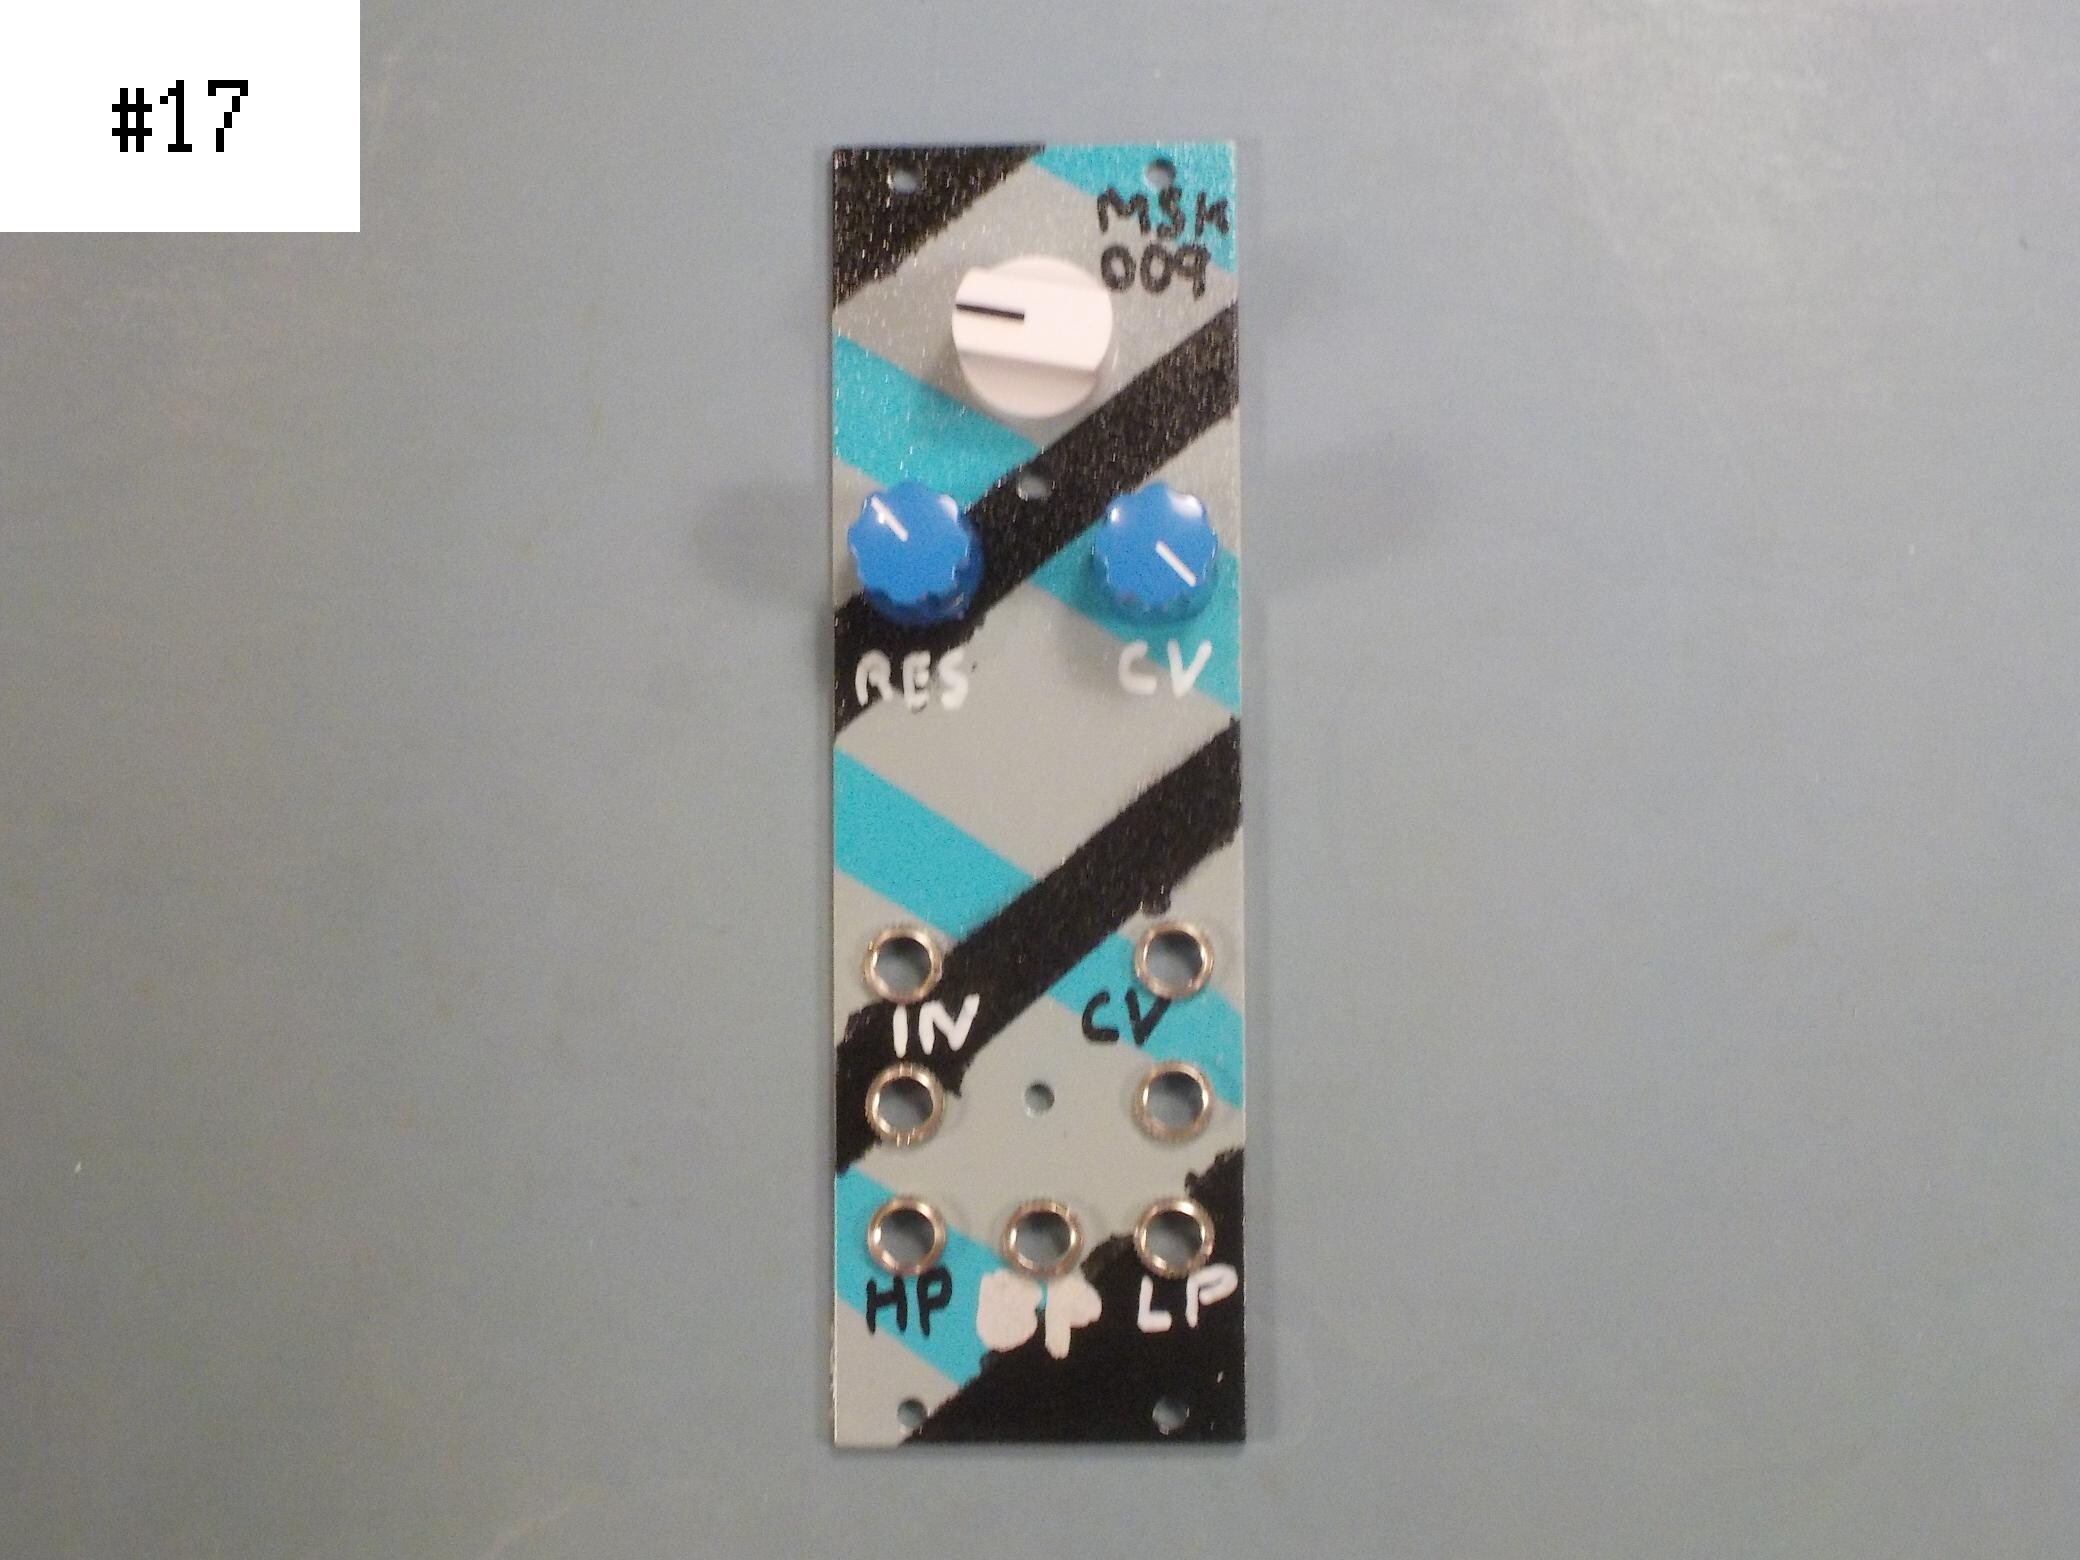 MSK 009 Coiler VCF, custom panel #17